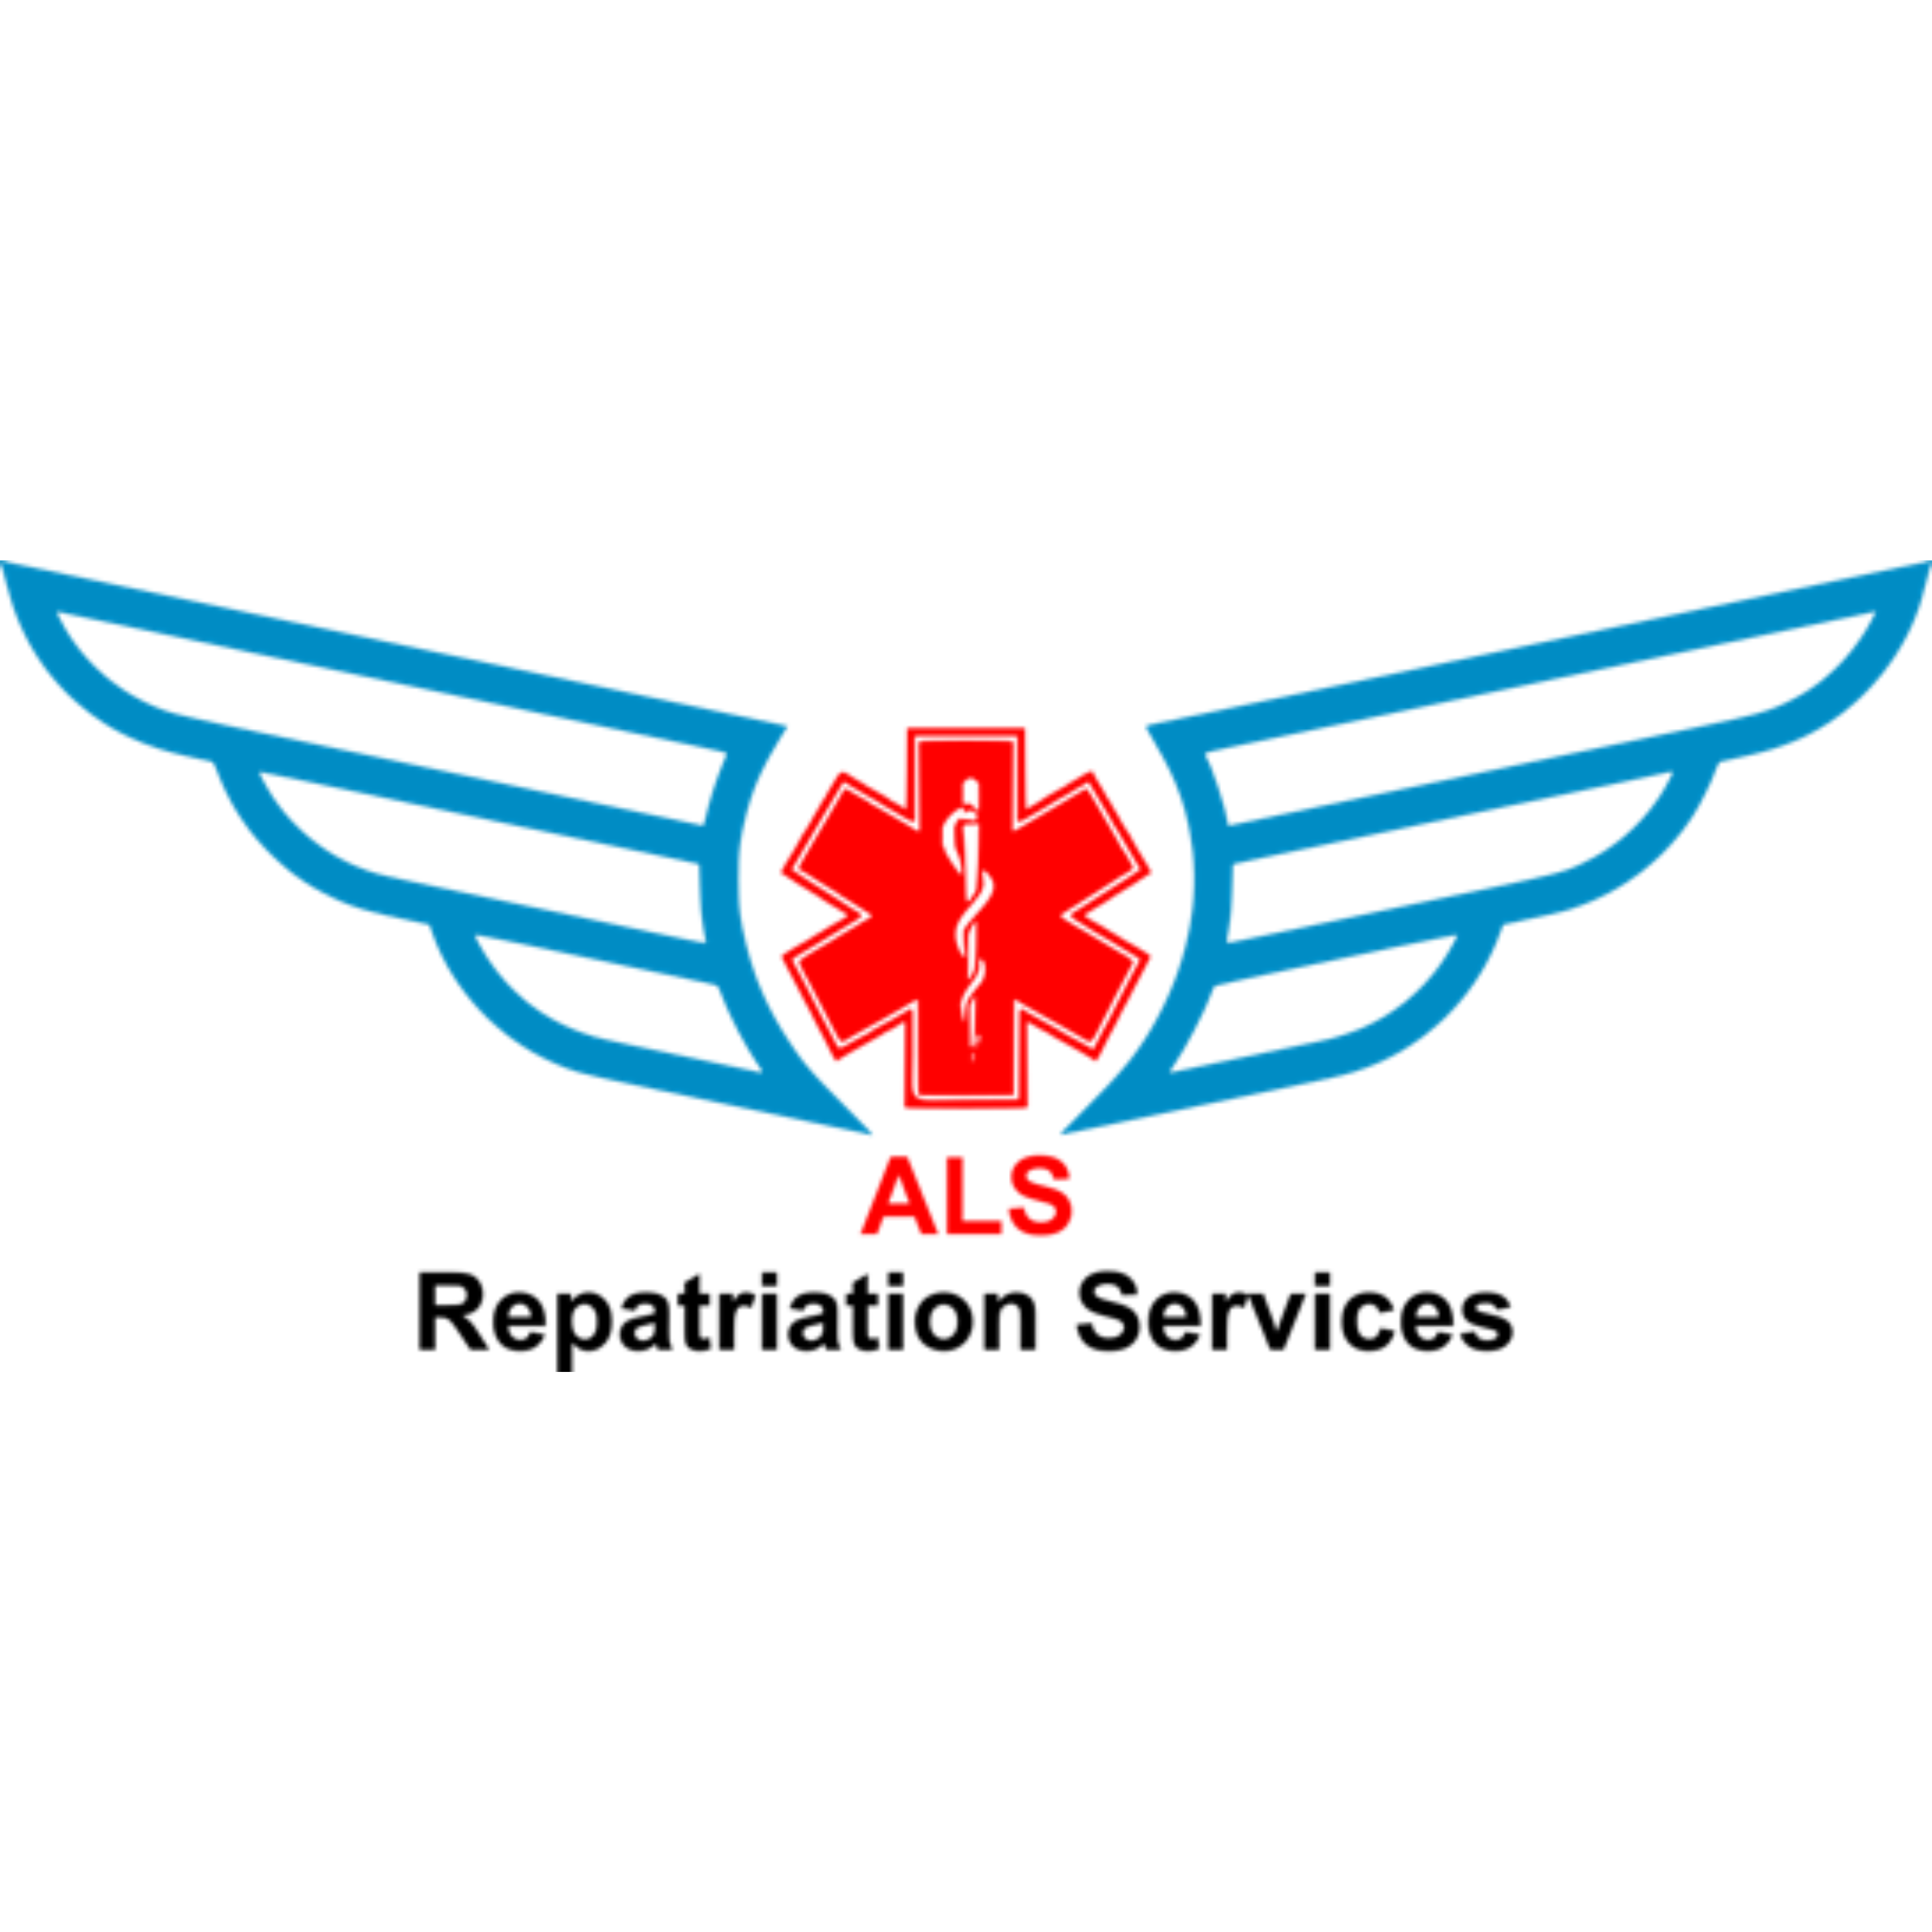 ALS Repatriation. Air, Land & Sea Repatriaton Services